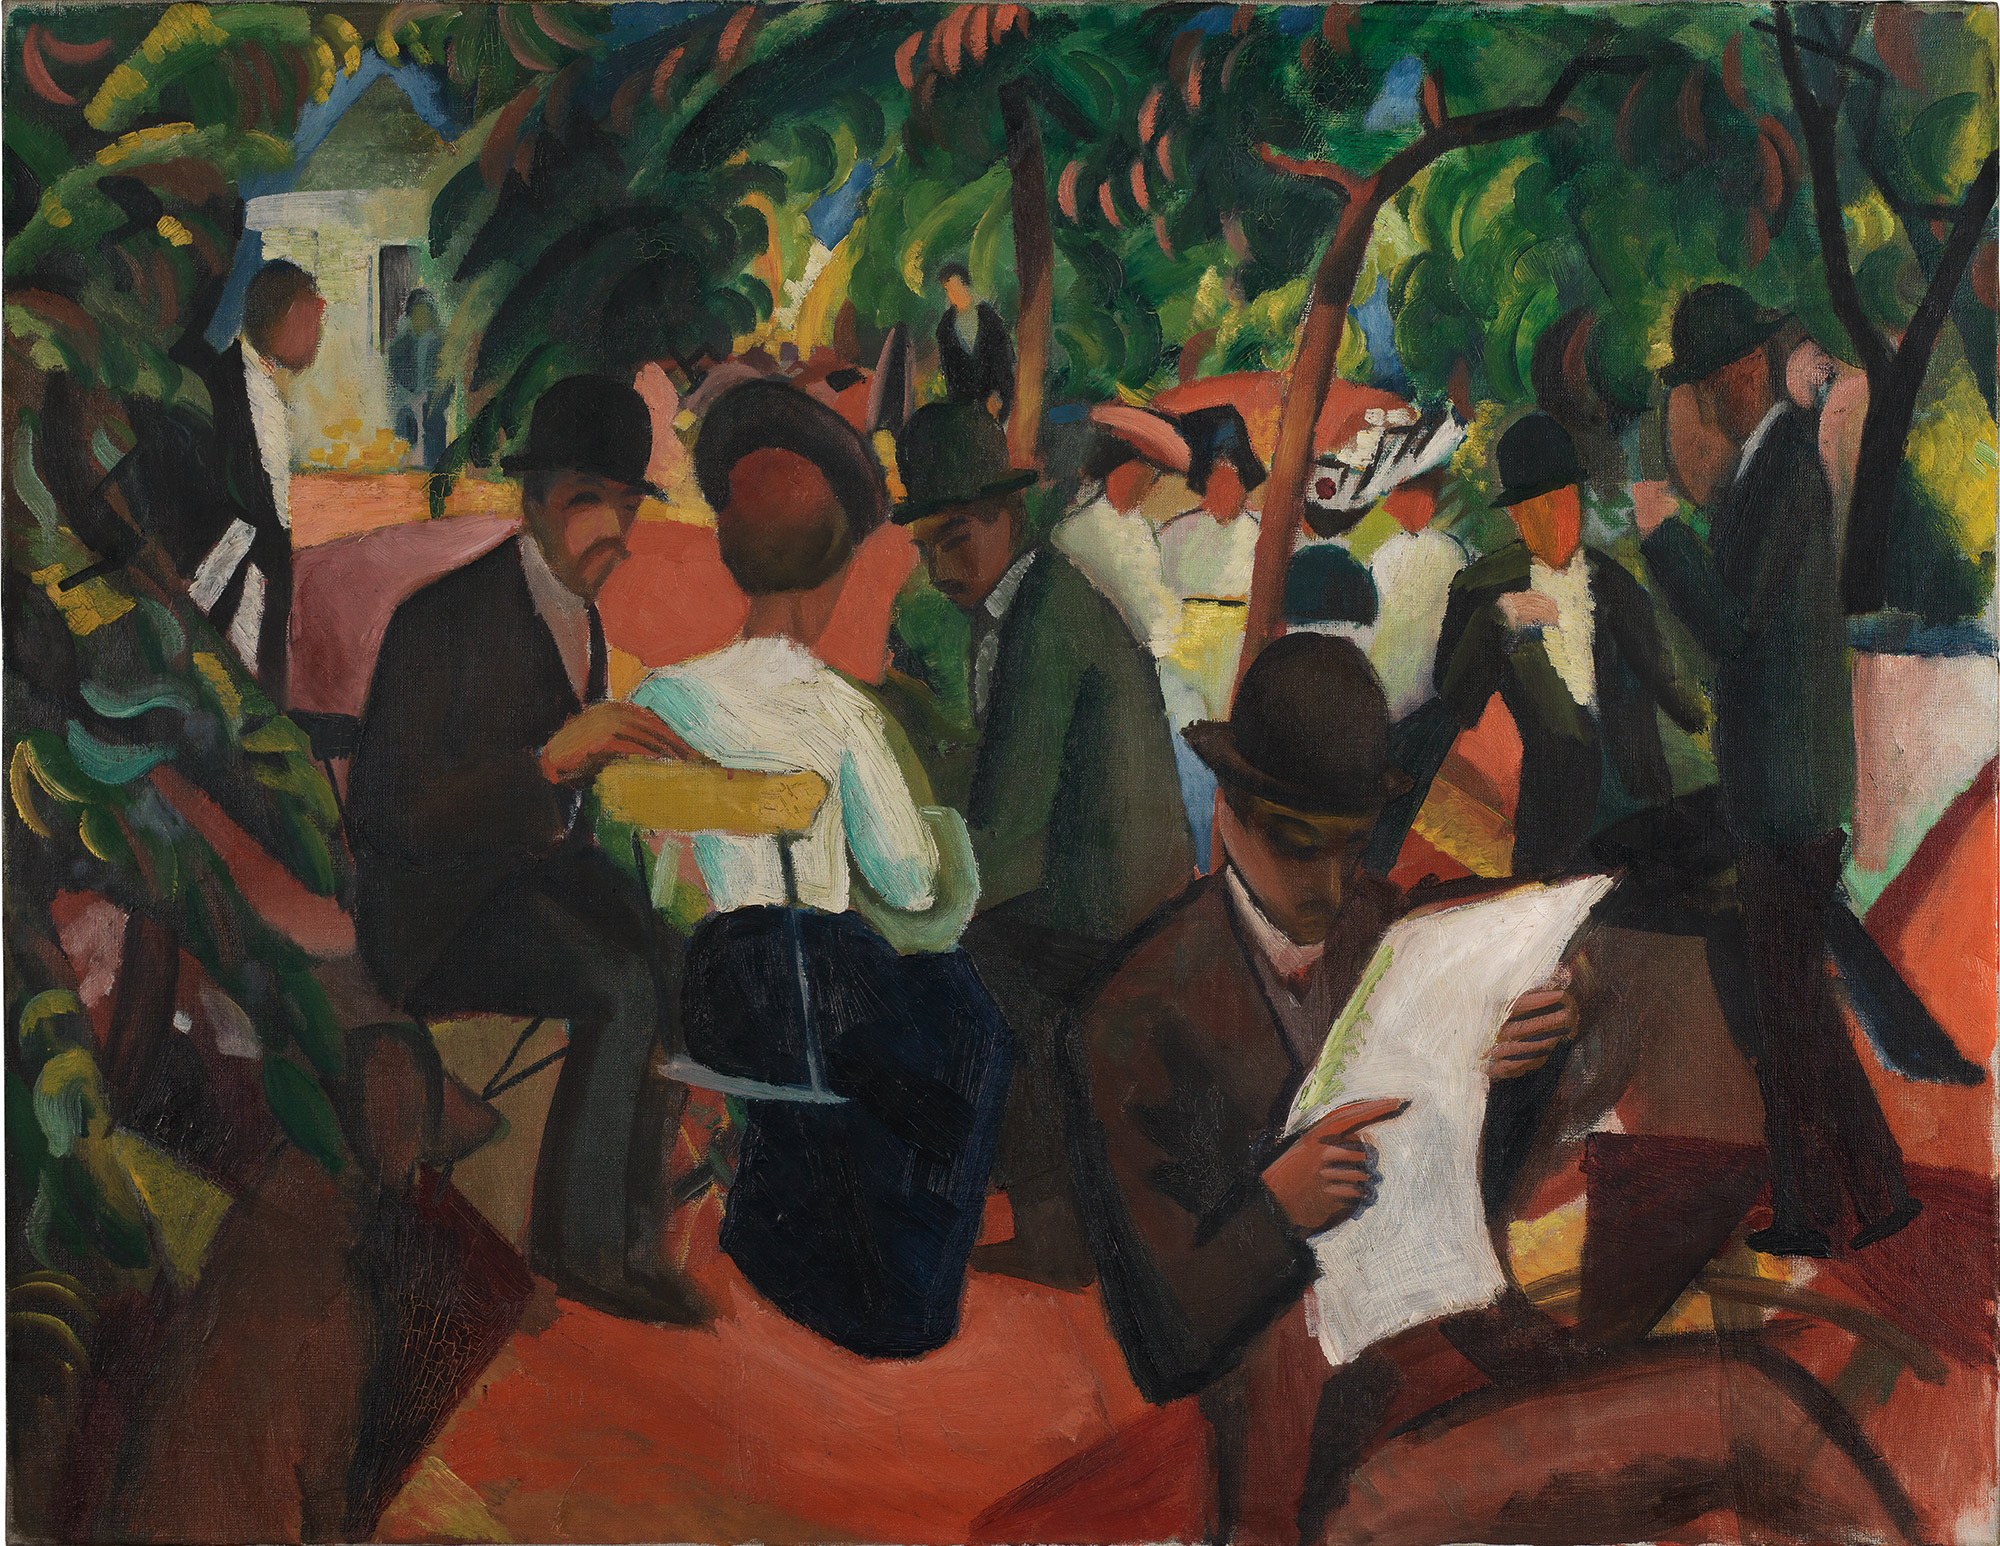 Étterem a parkban by August Macke - 1912 - 81 x 105 cm  